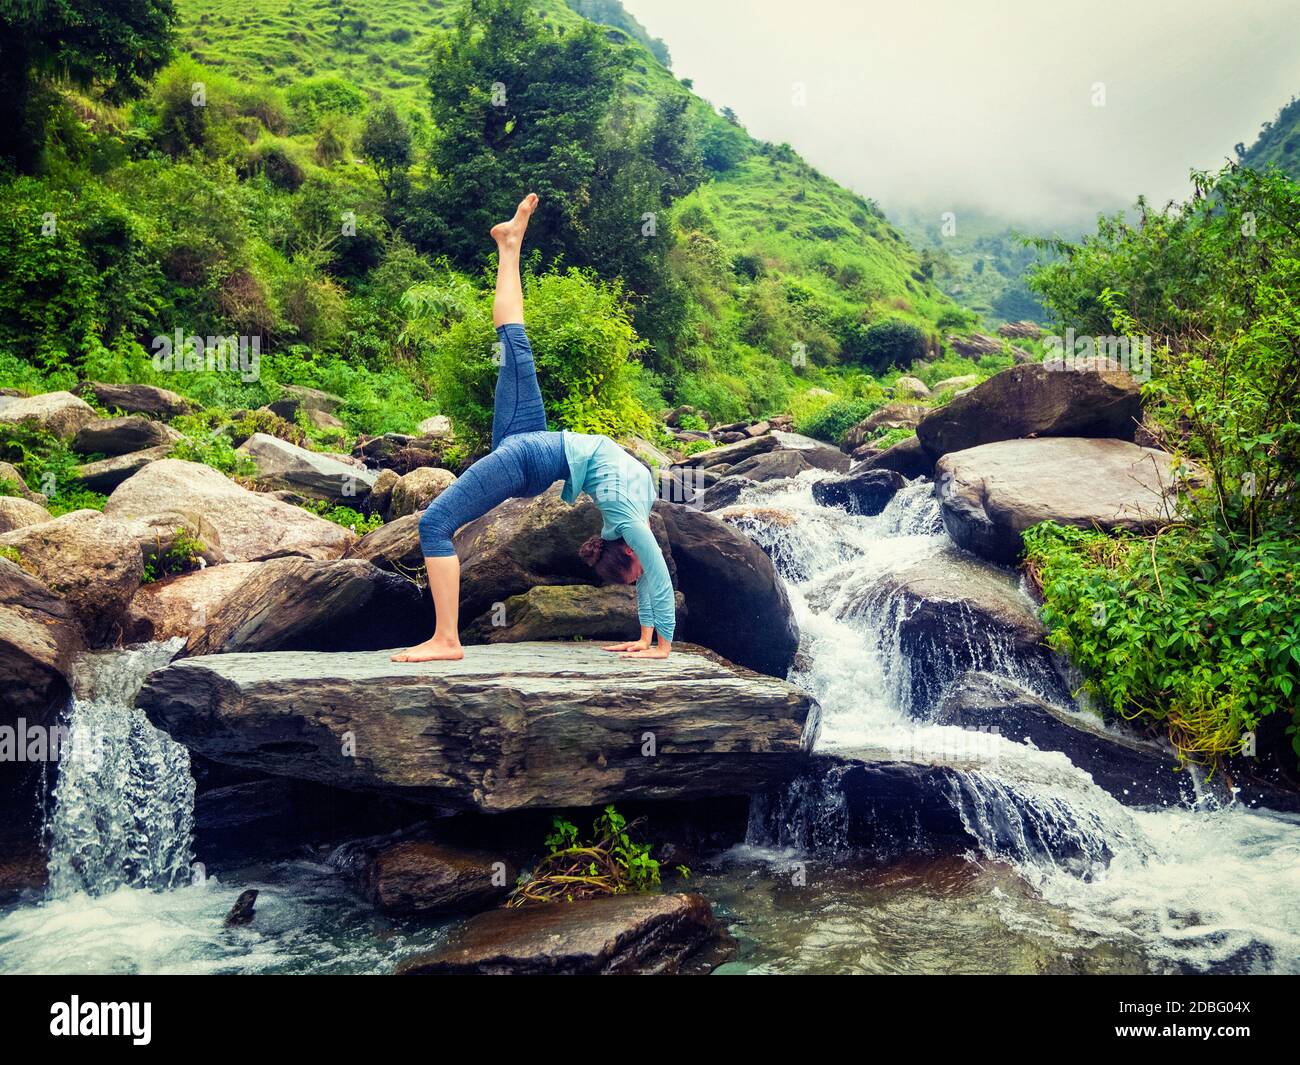 Outdoors de yoga - femme faisant du yoga asana eka pada urdva dhanurasana remonter Bow poser dos benkd dehors à la cascade dans l'Himalaya. Effet rétro vintage Banque D'Images